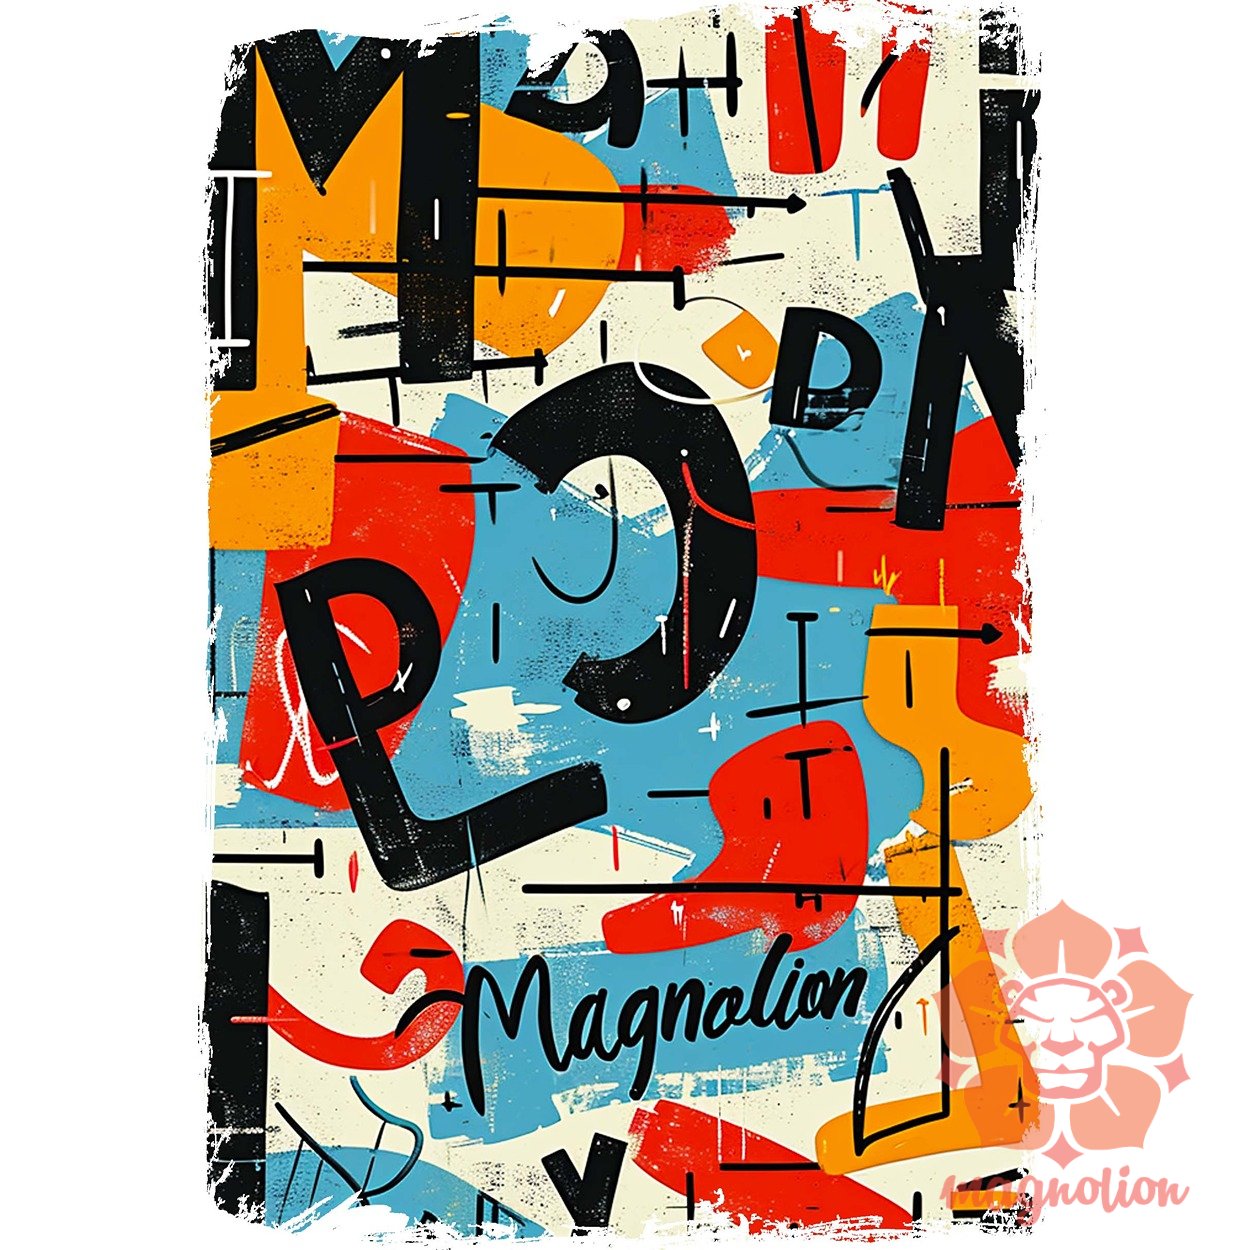 Magnolion graffiti v2